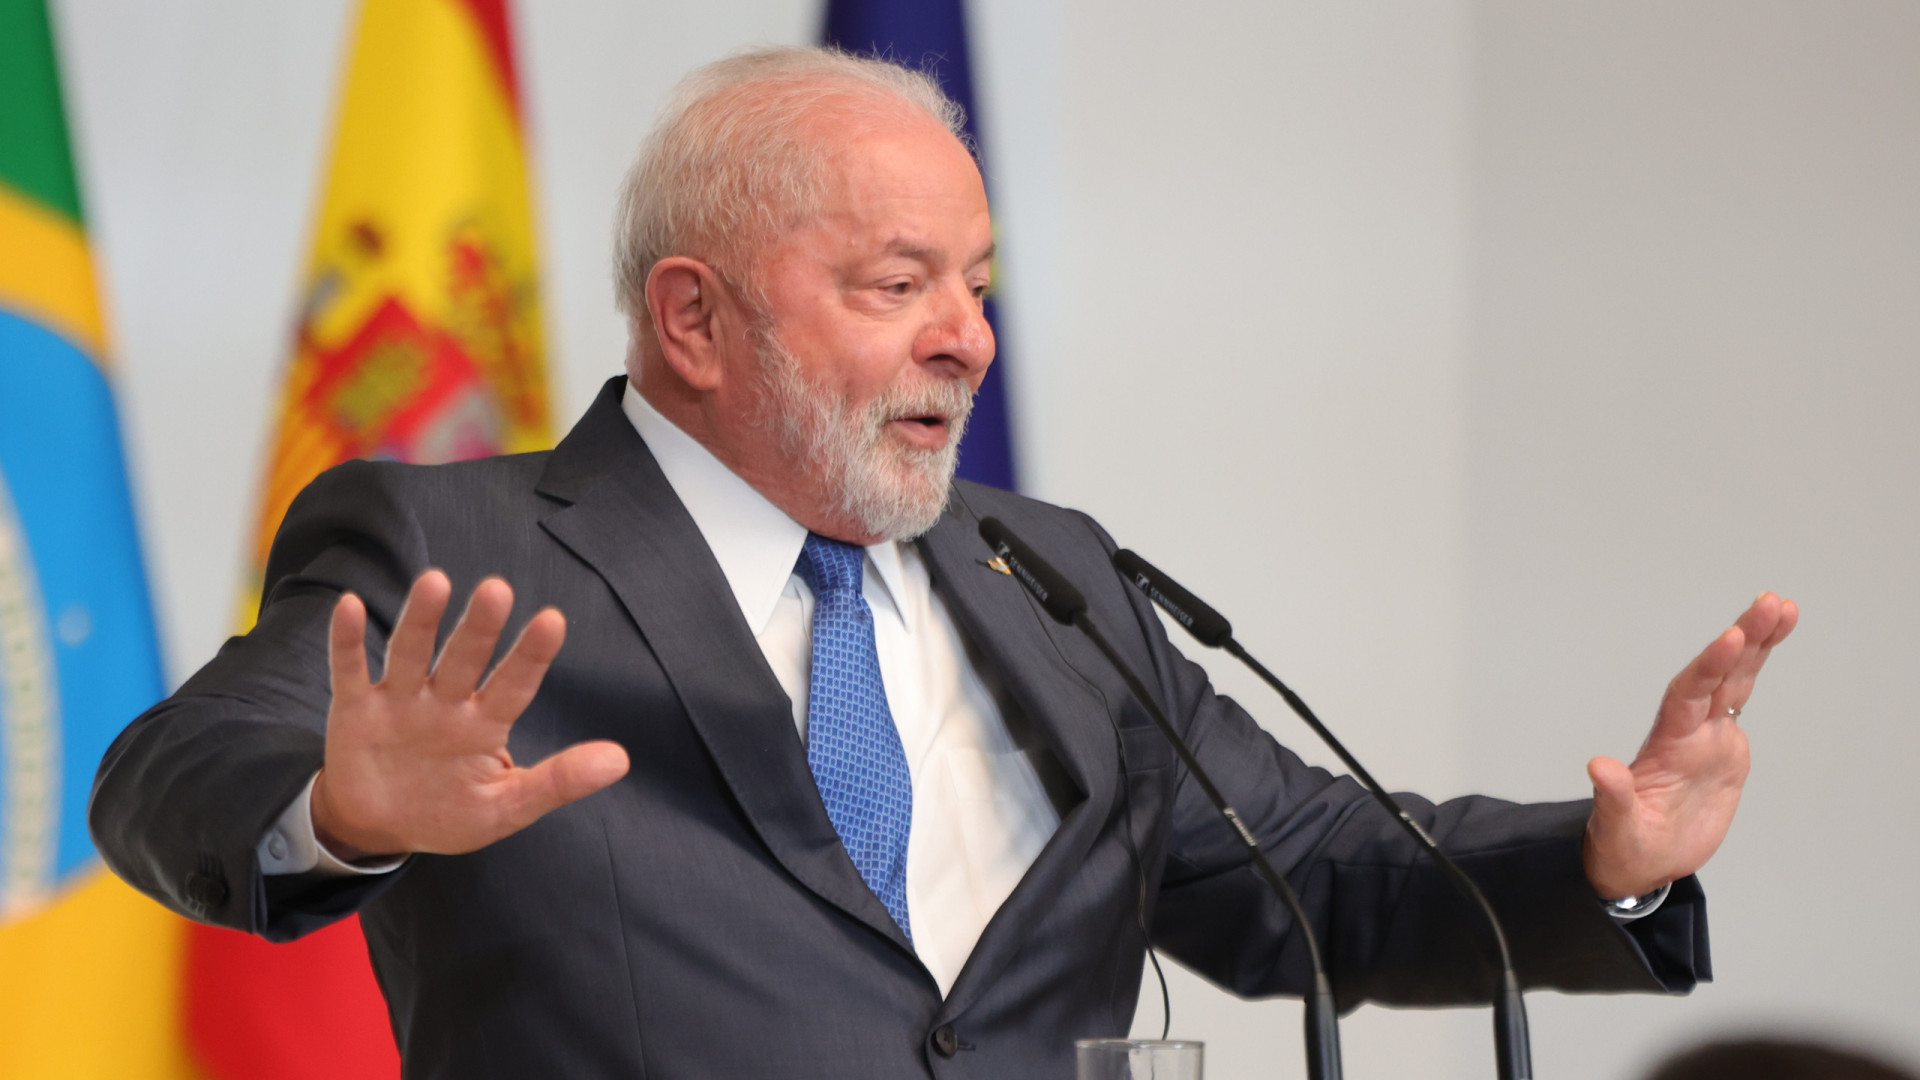 Promessa de Lula para ampliar isenção de IR até R$ 5.000 pode custar R$ 216 bi até 2026